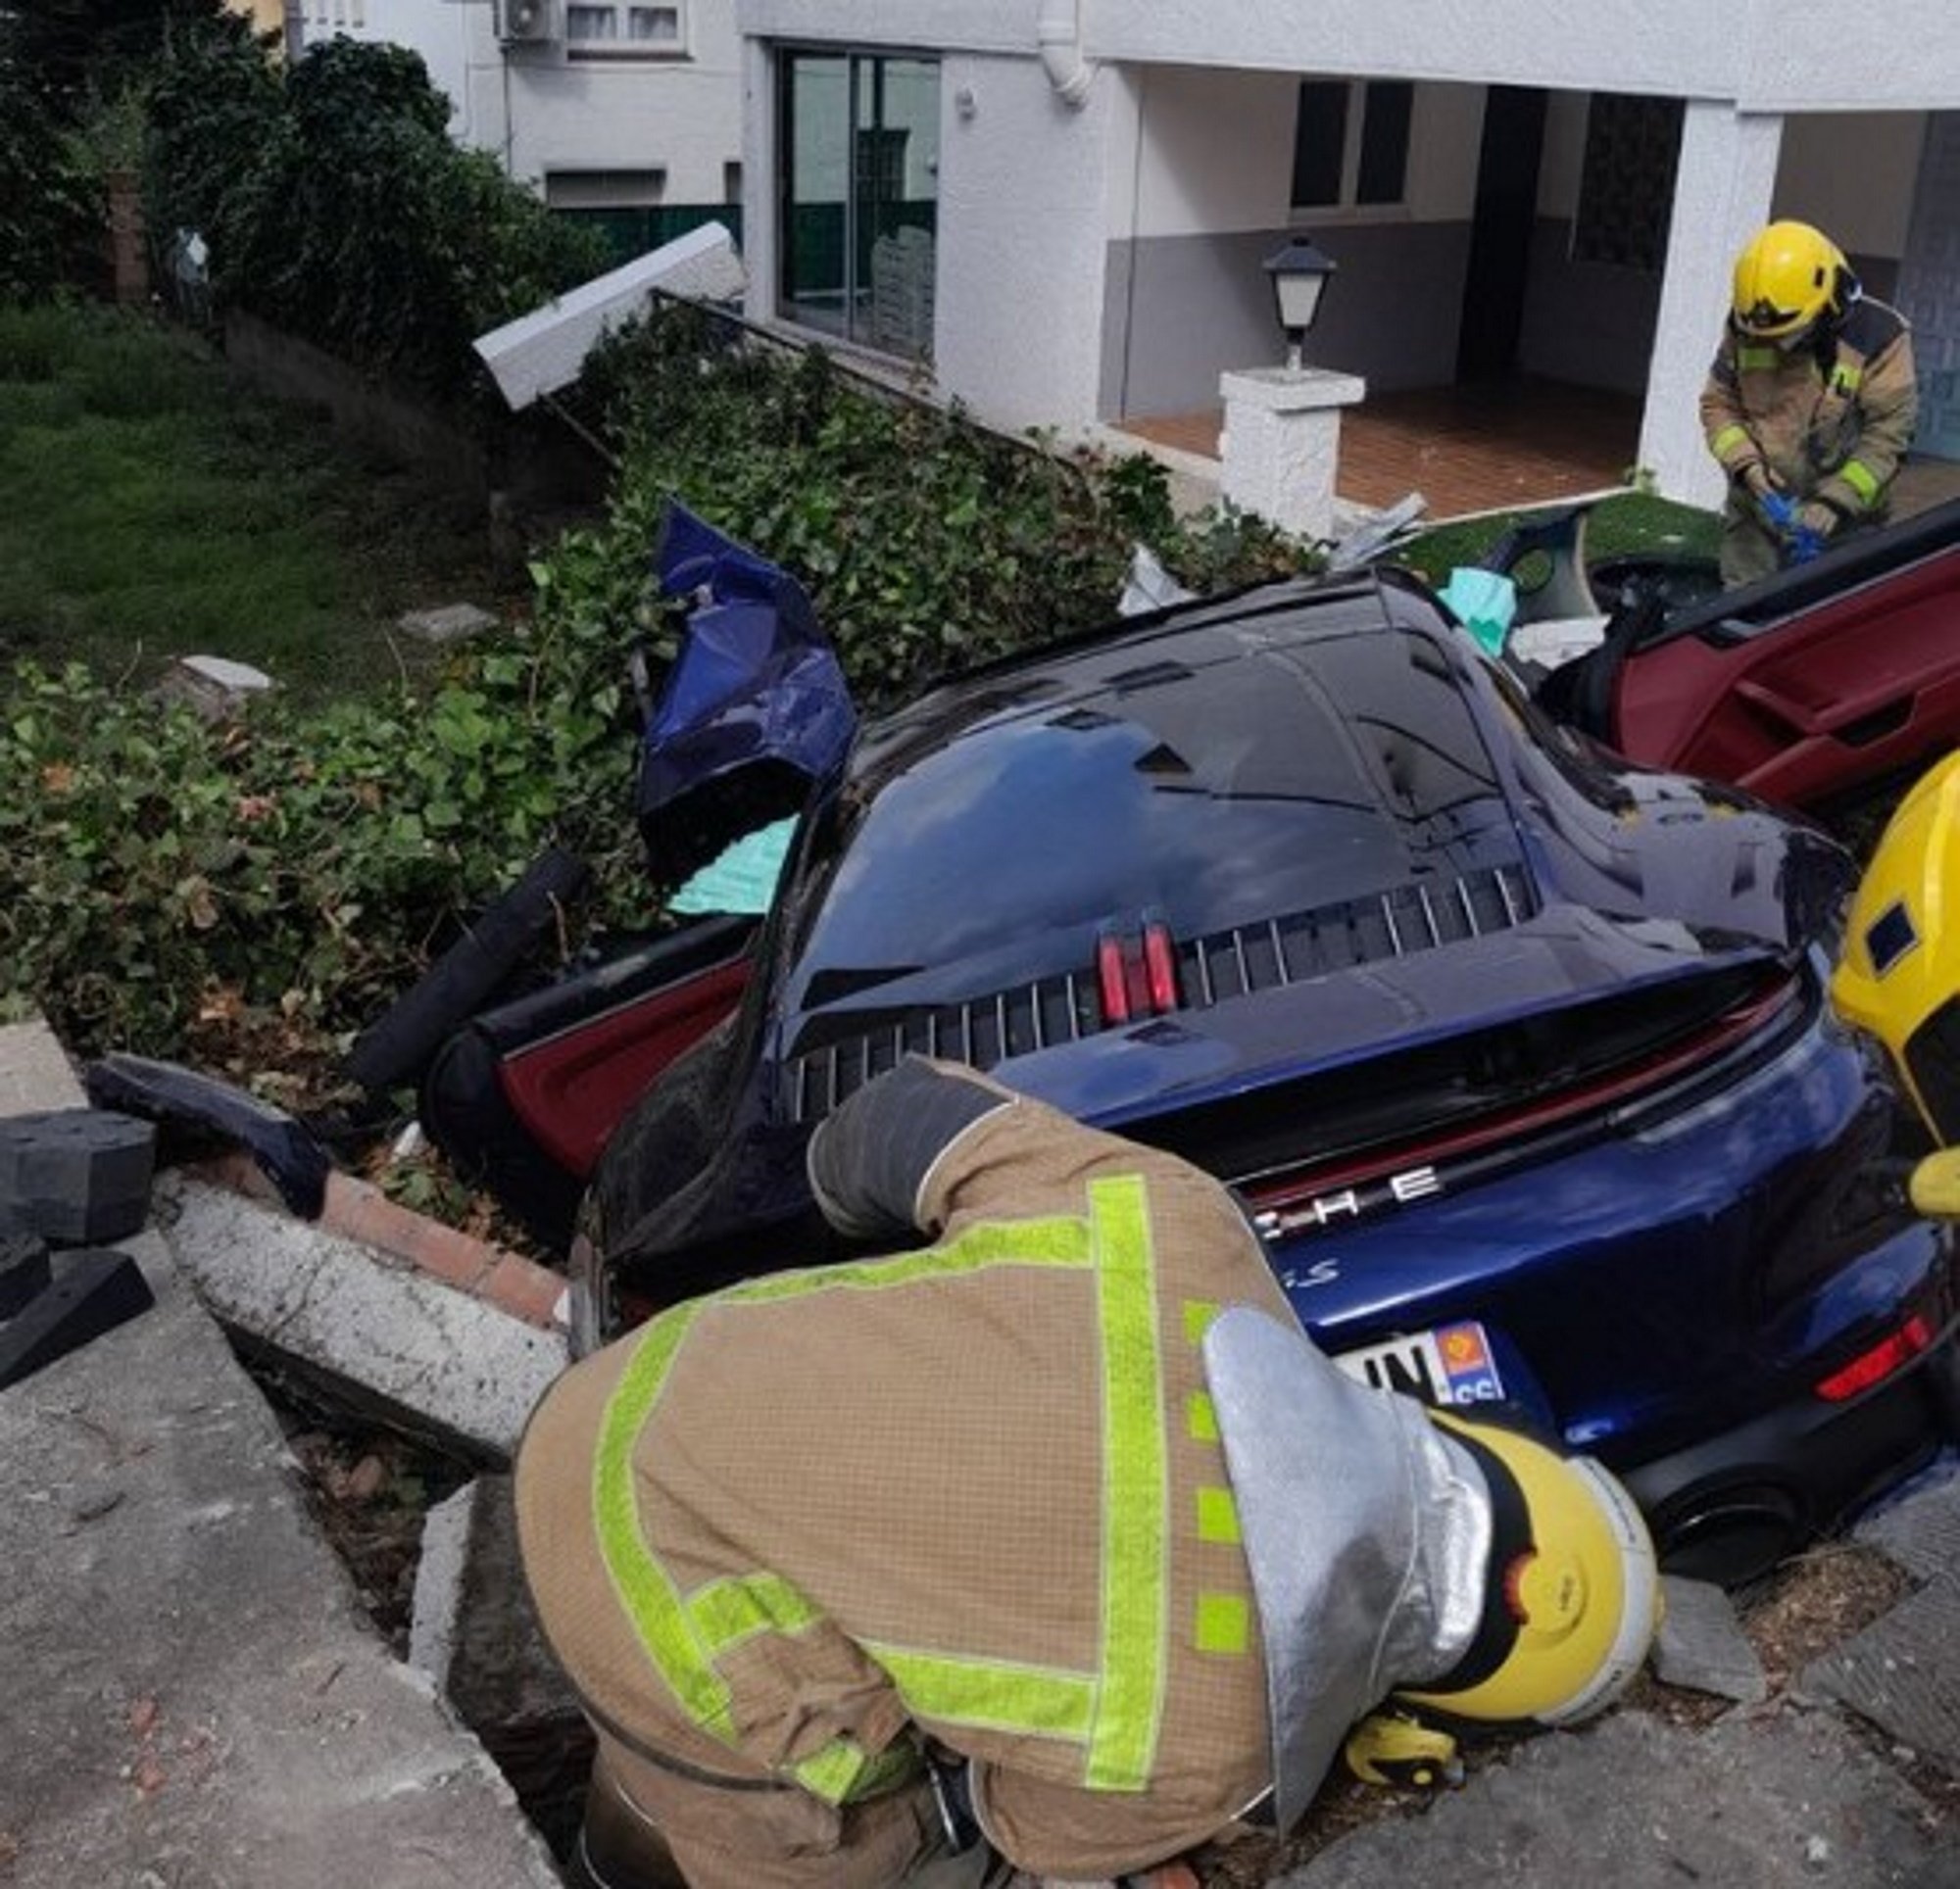 2 personas heridas graves chocar coche valla casa particular rosas foto bomberos